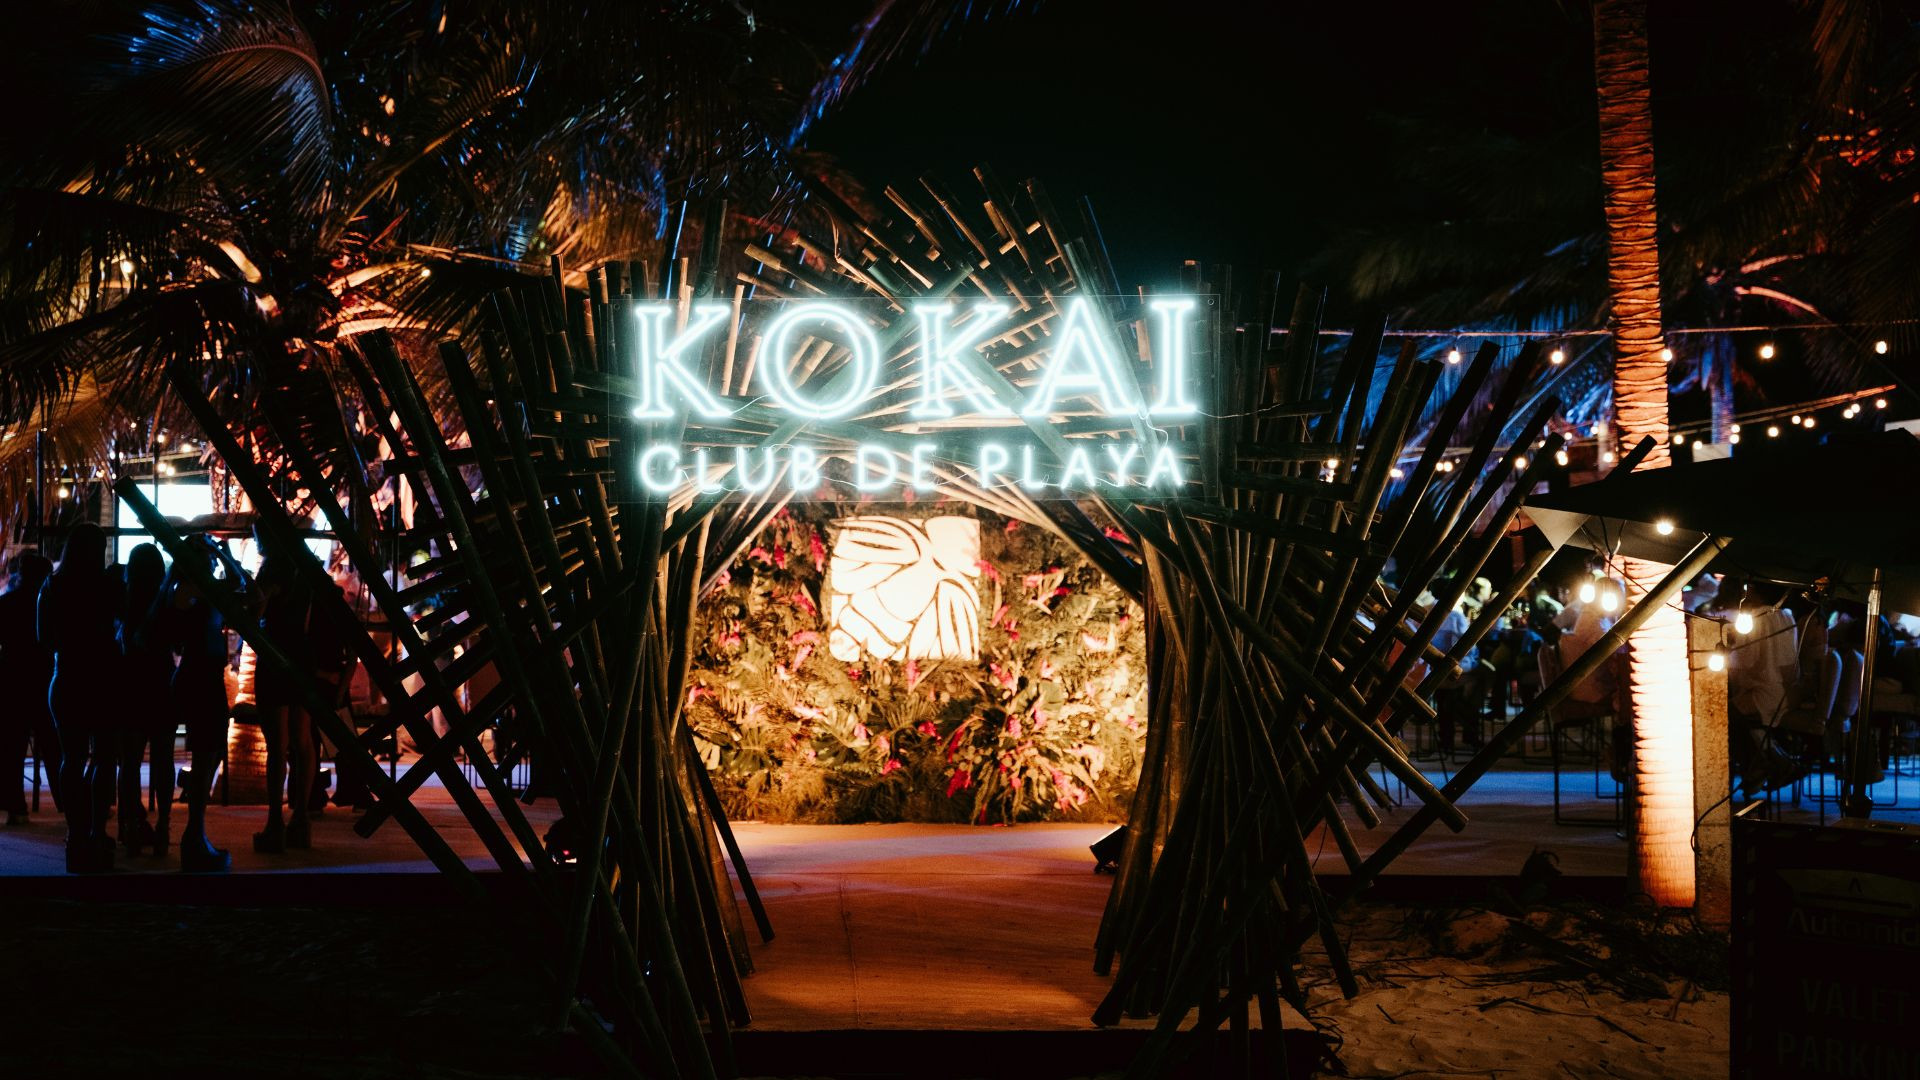 Colocan primera piedra del exclusivo Kokai Club de Playa: El lugar de las eternas vacaciones